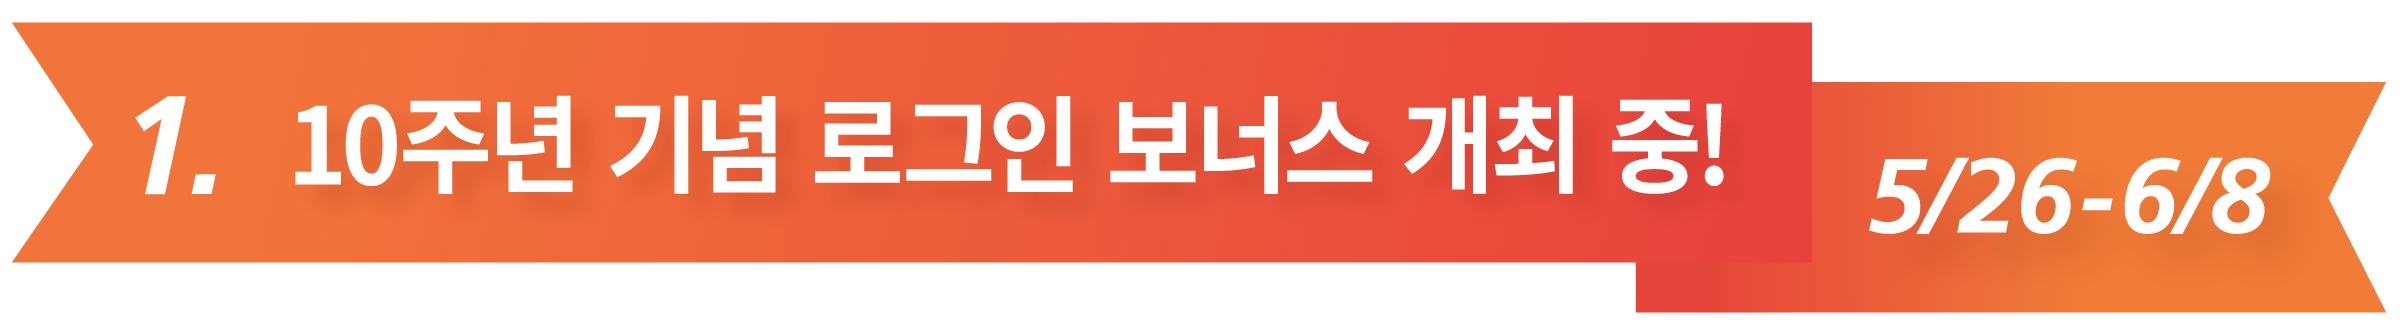 1. 10주년 기념 로그인 보너스 개최 중!  5/26-6/8